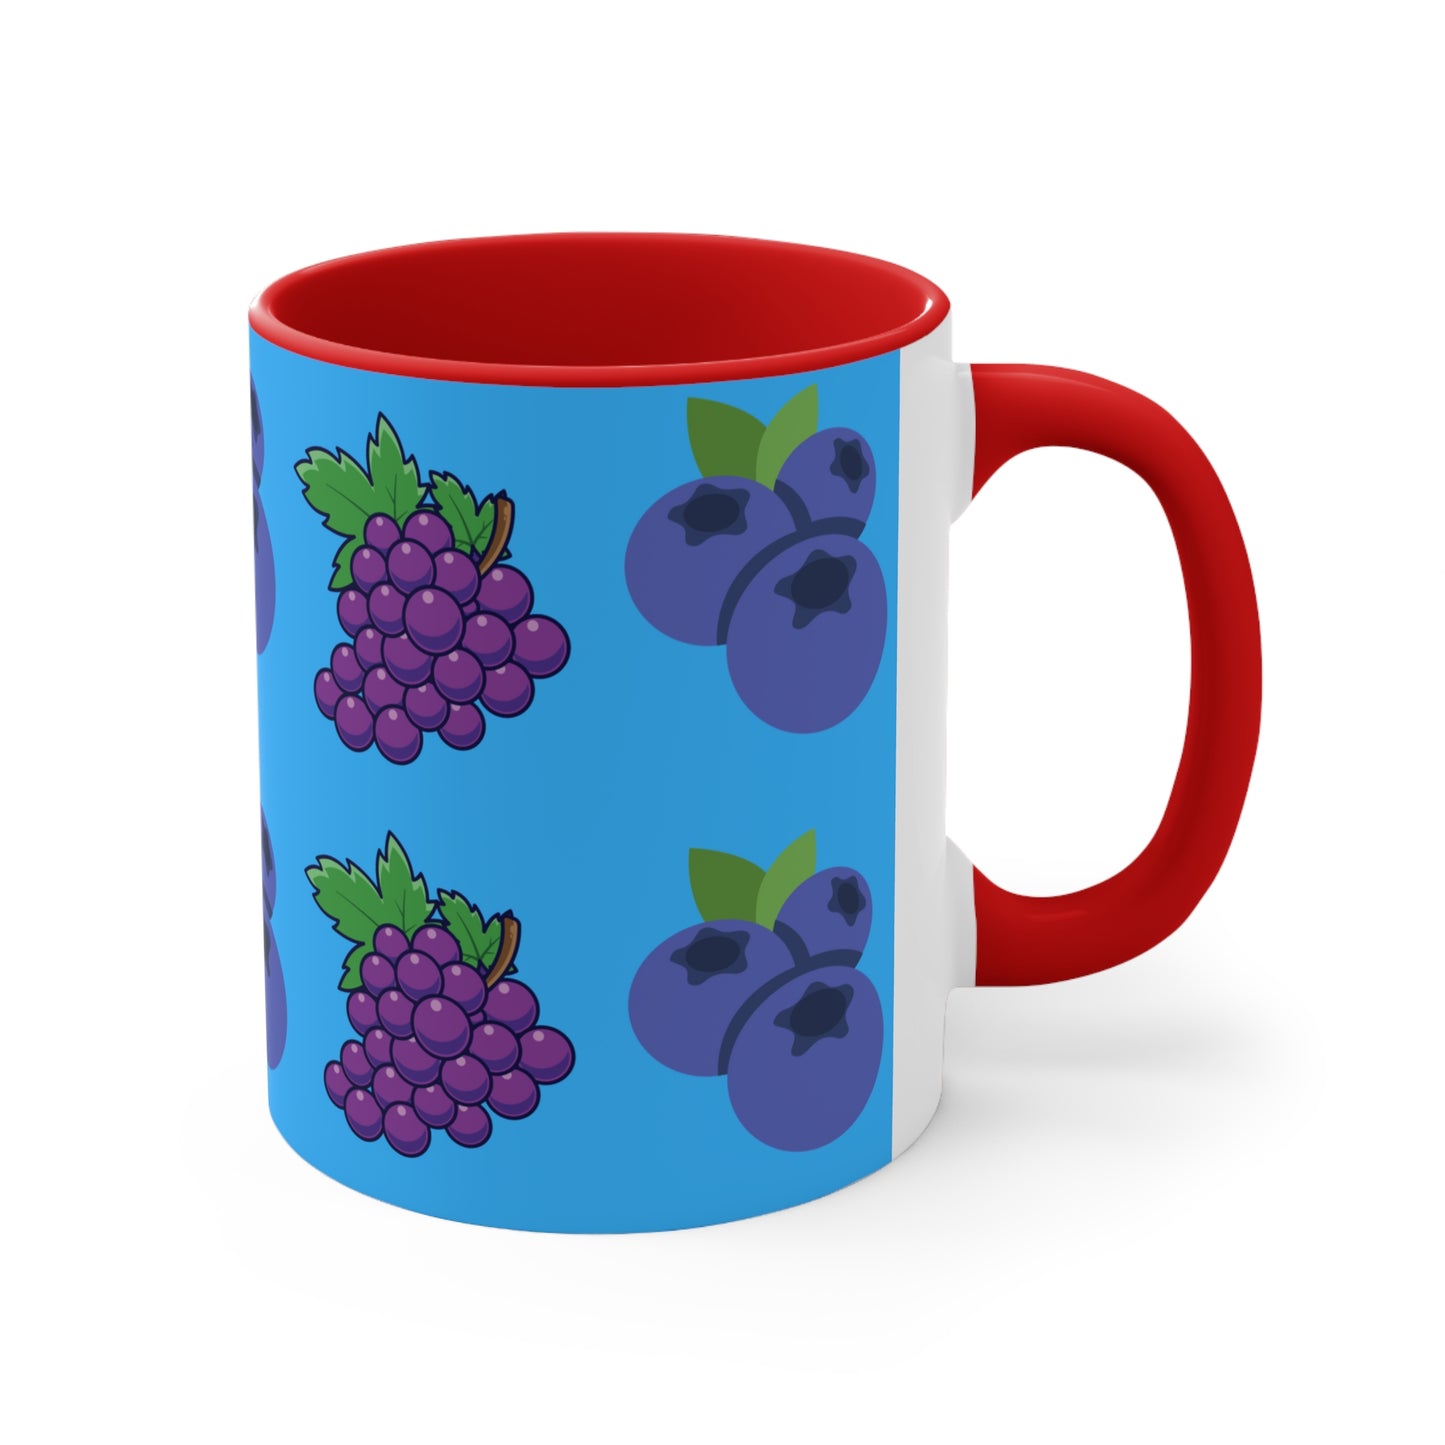 Blueberry and Grape mug